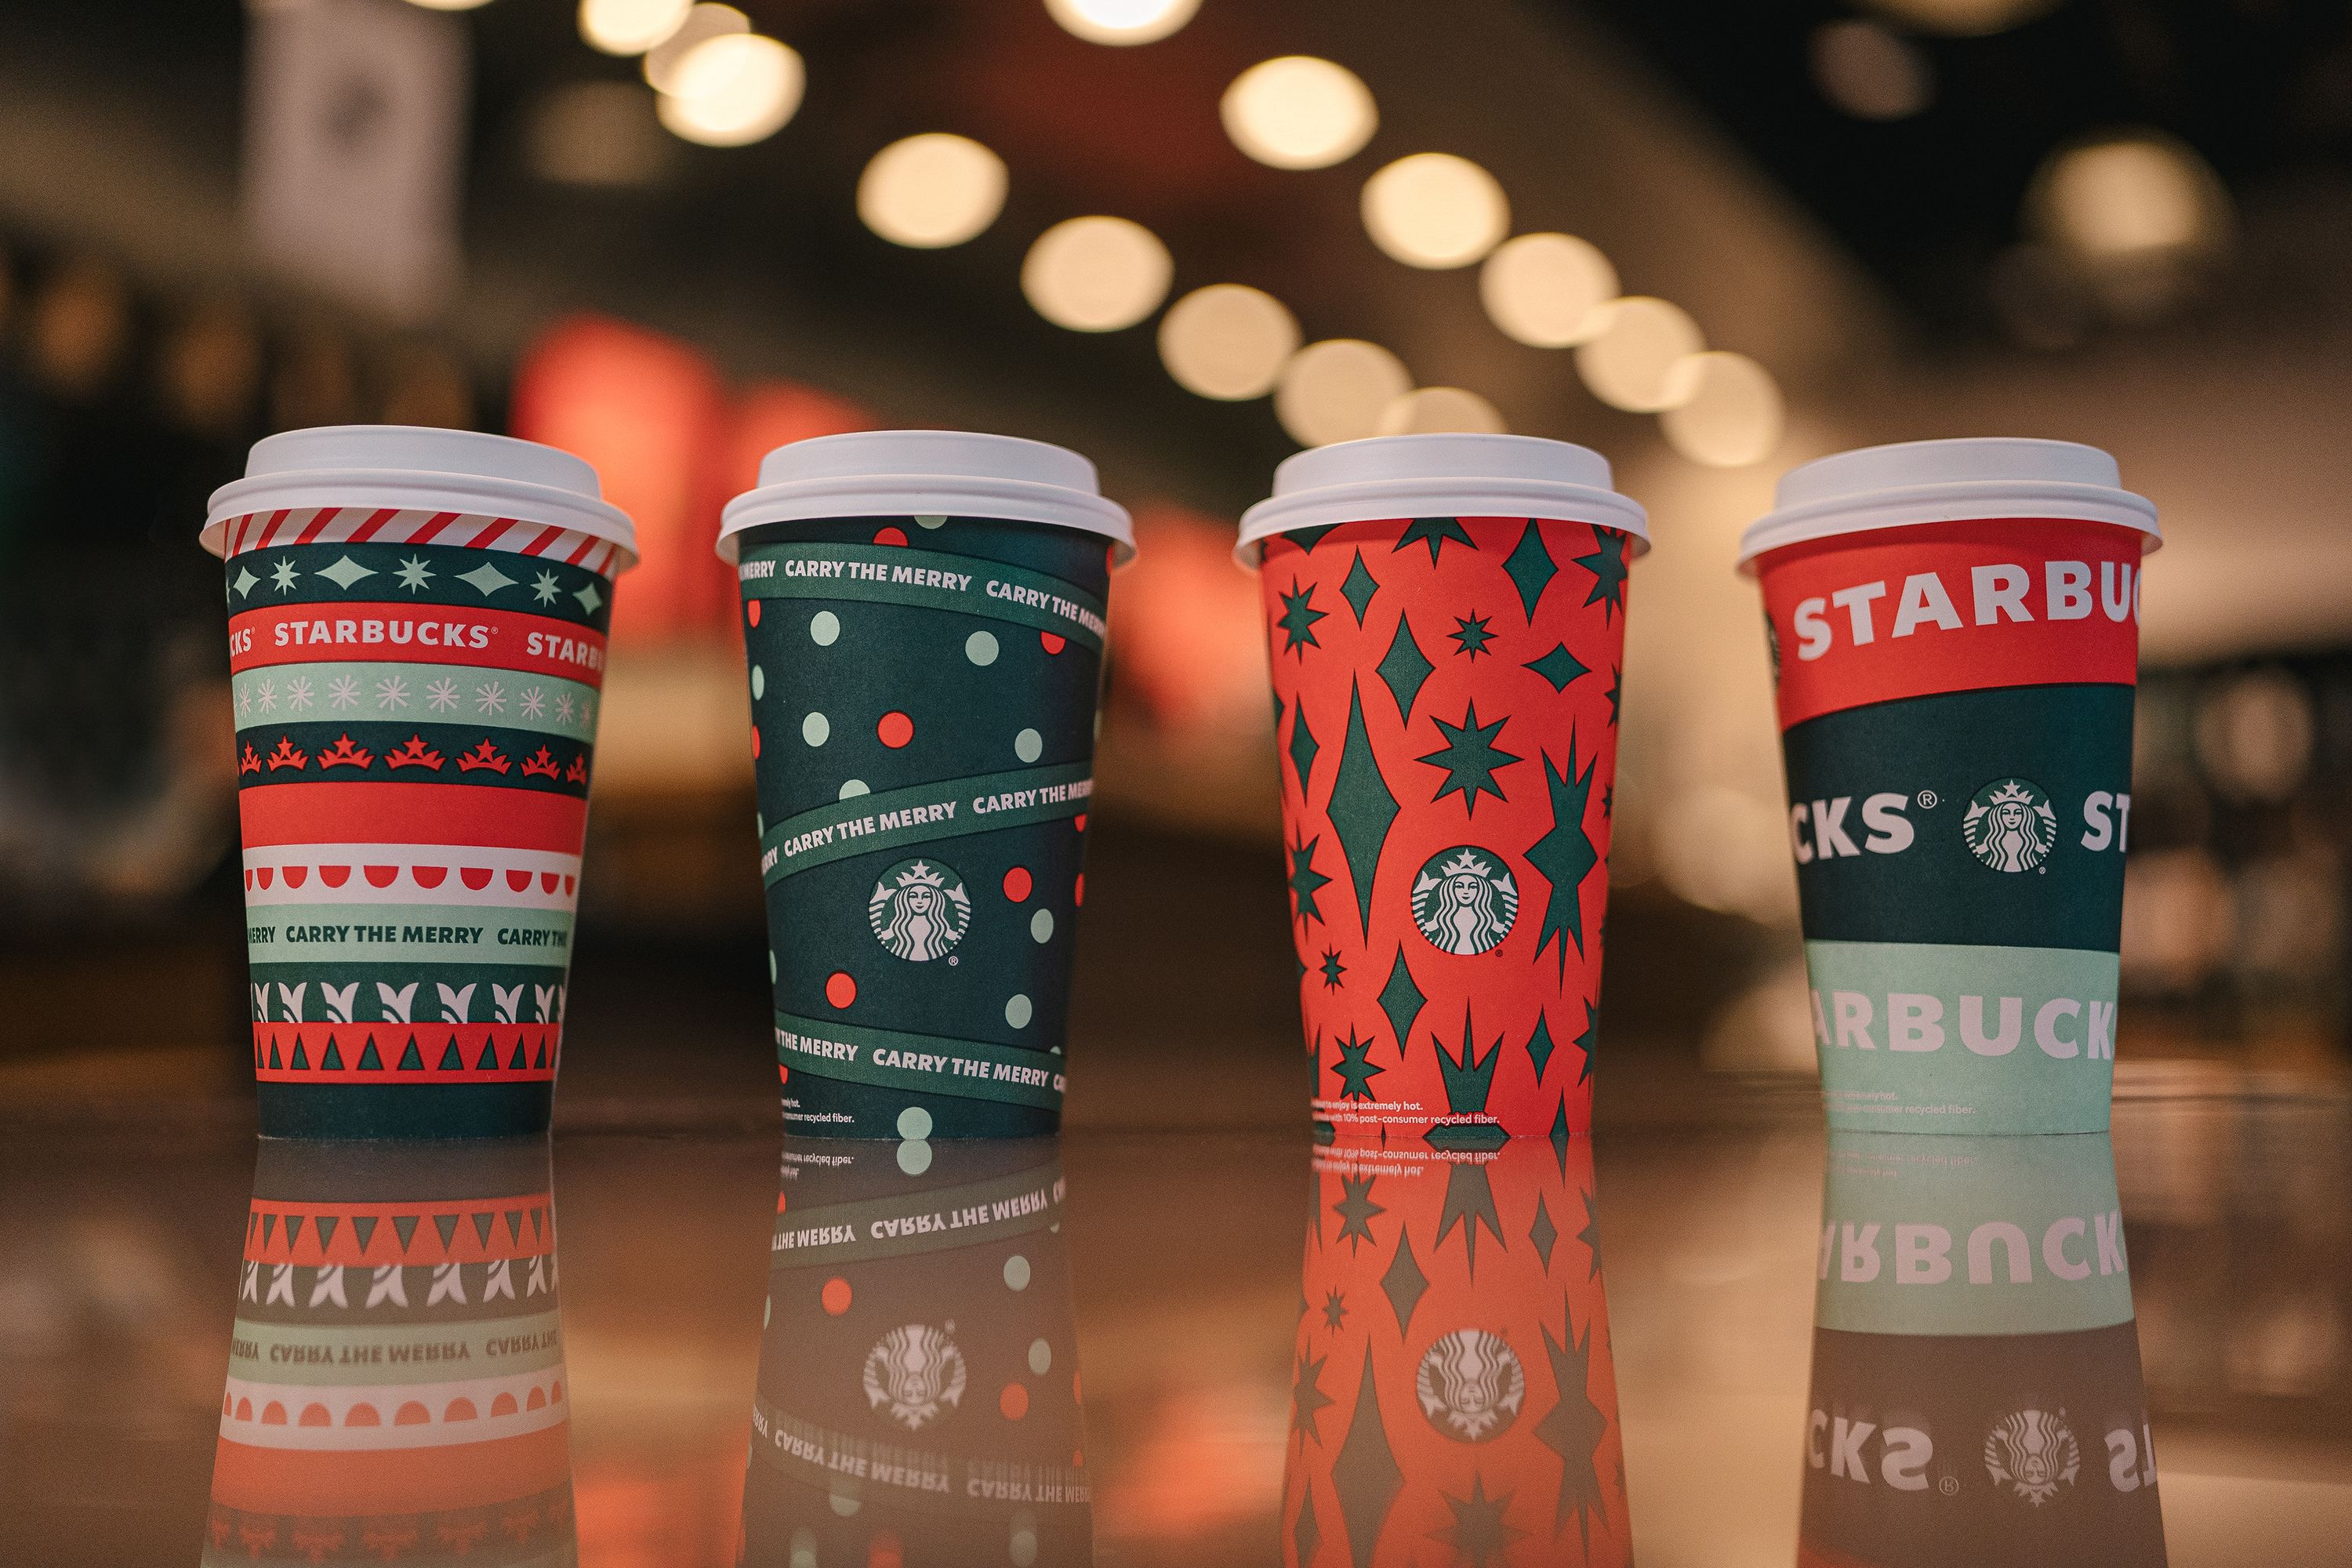 starbucks holiday cups 2020 reusable